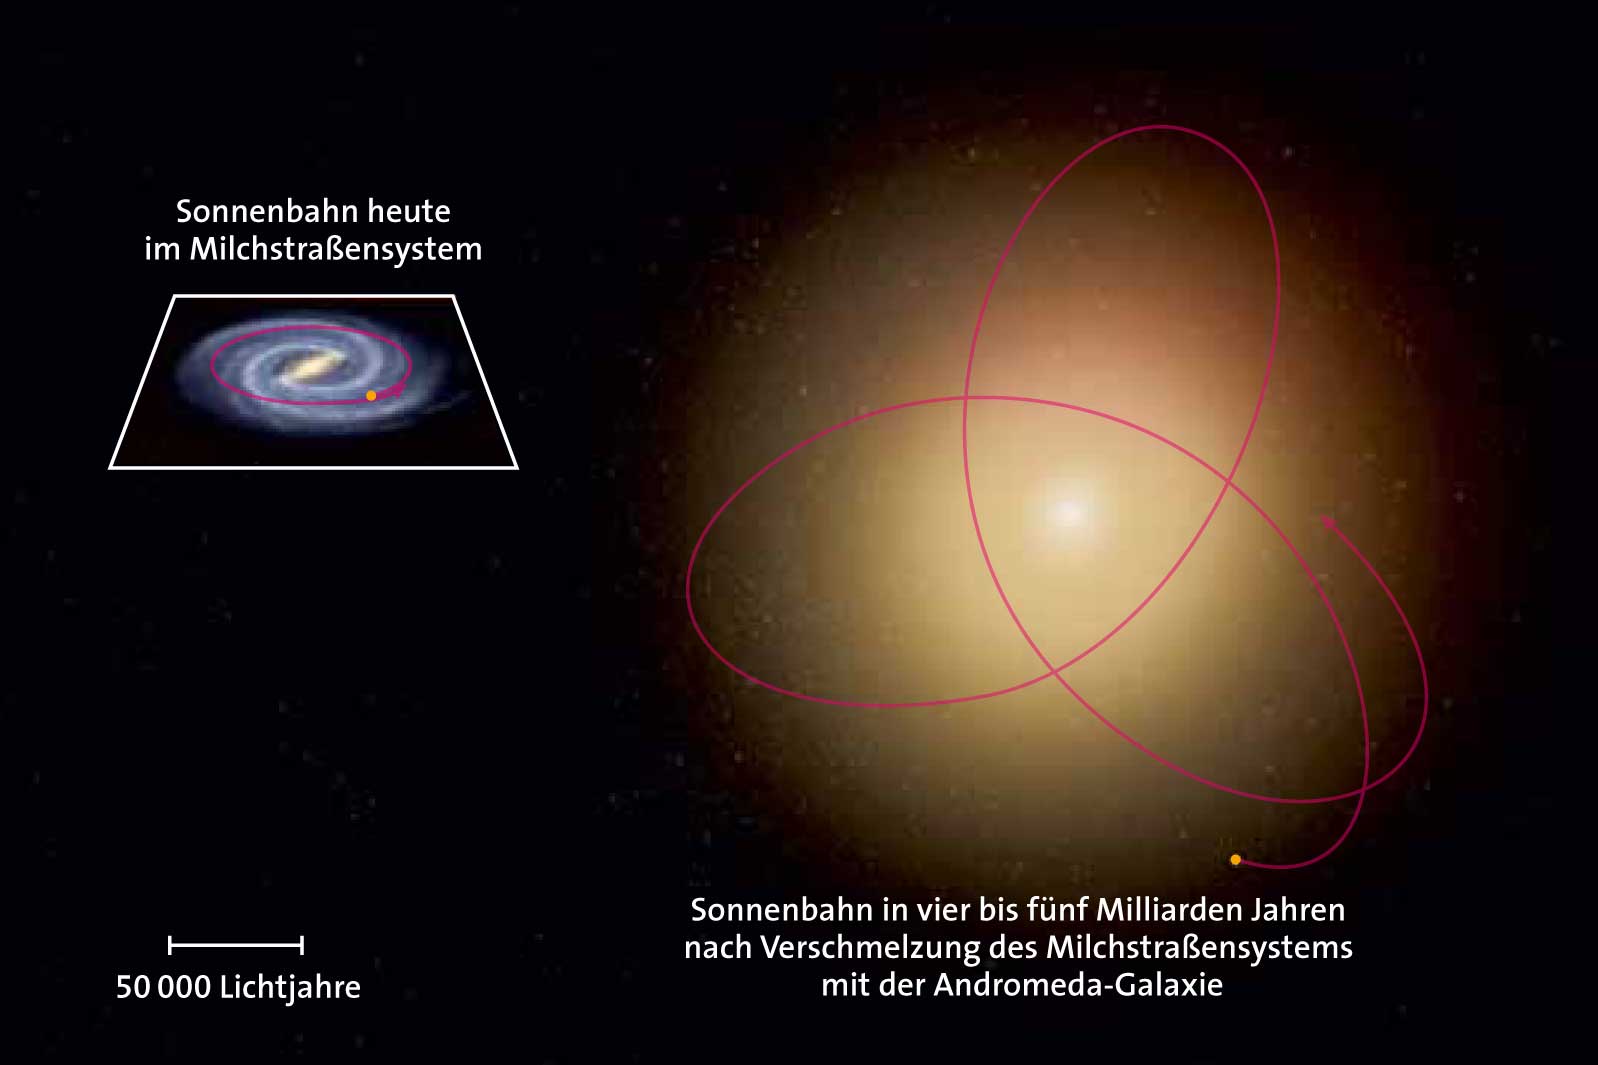 Verlauf der Sonnenbahn in vier bis fünf Milliarden Jahren